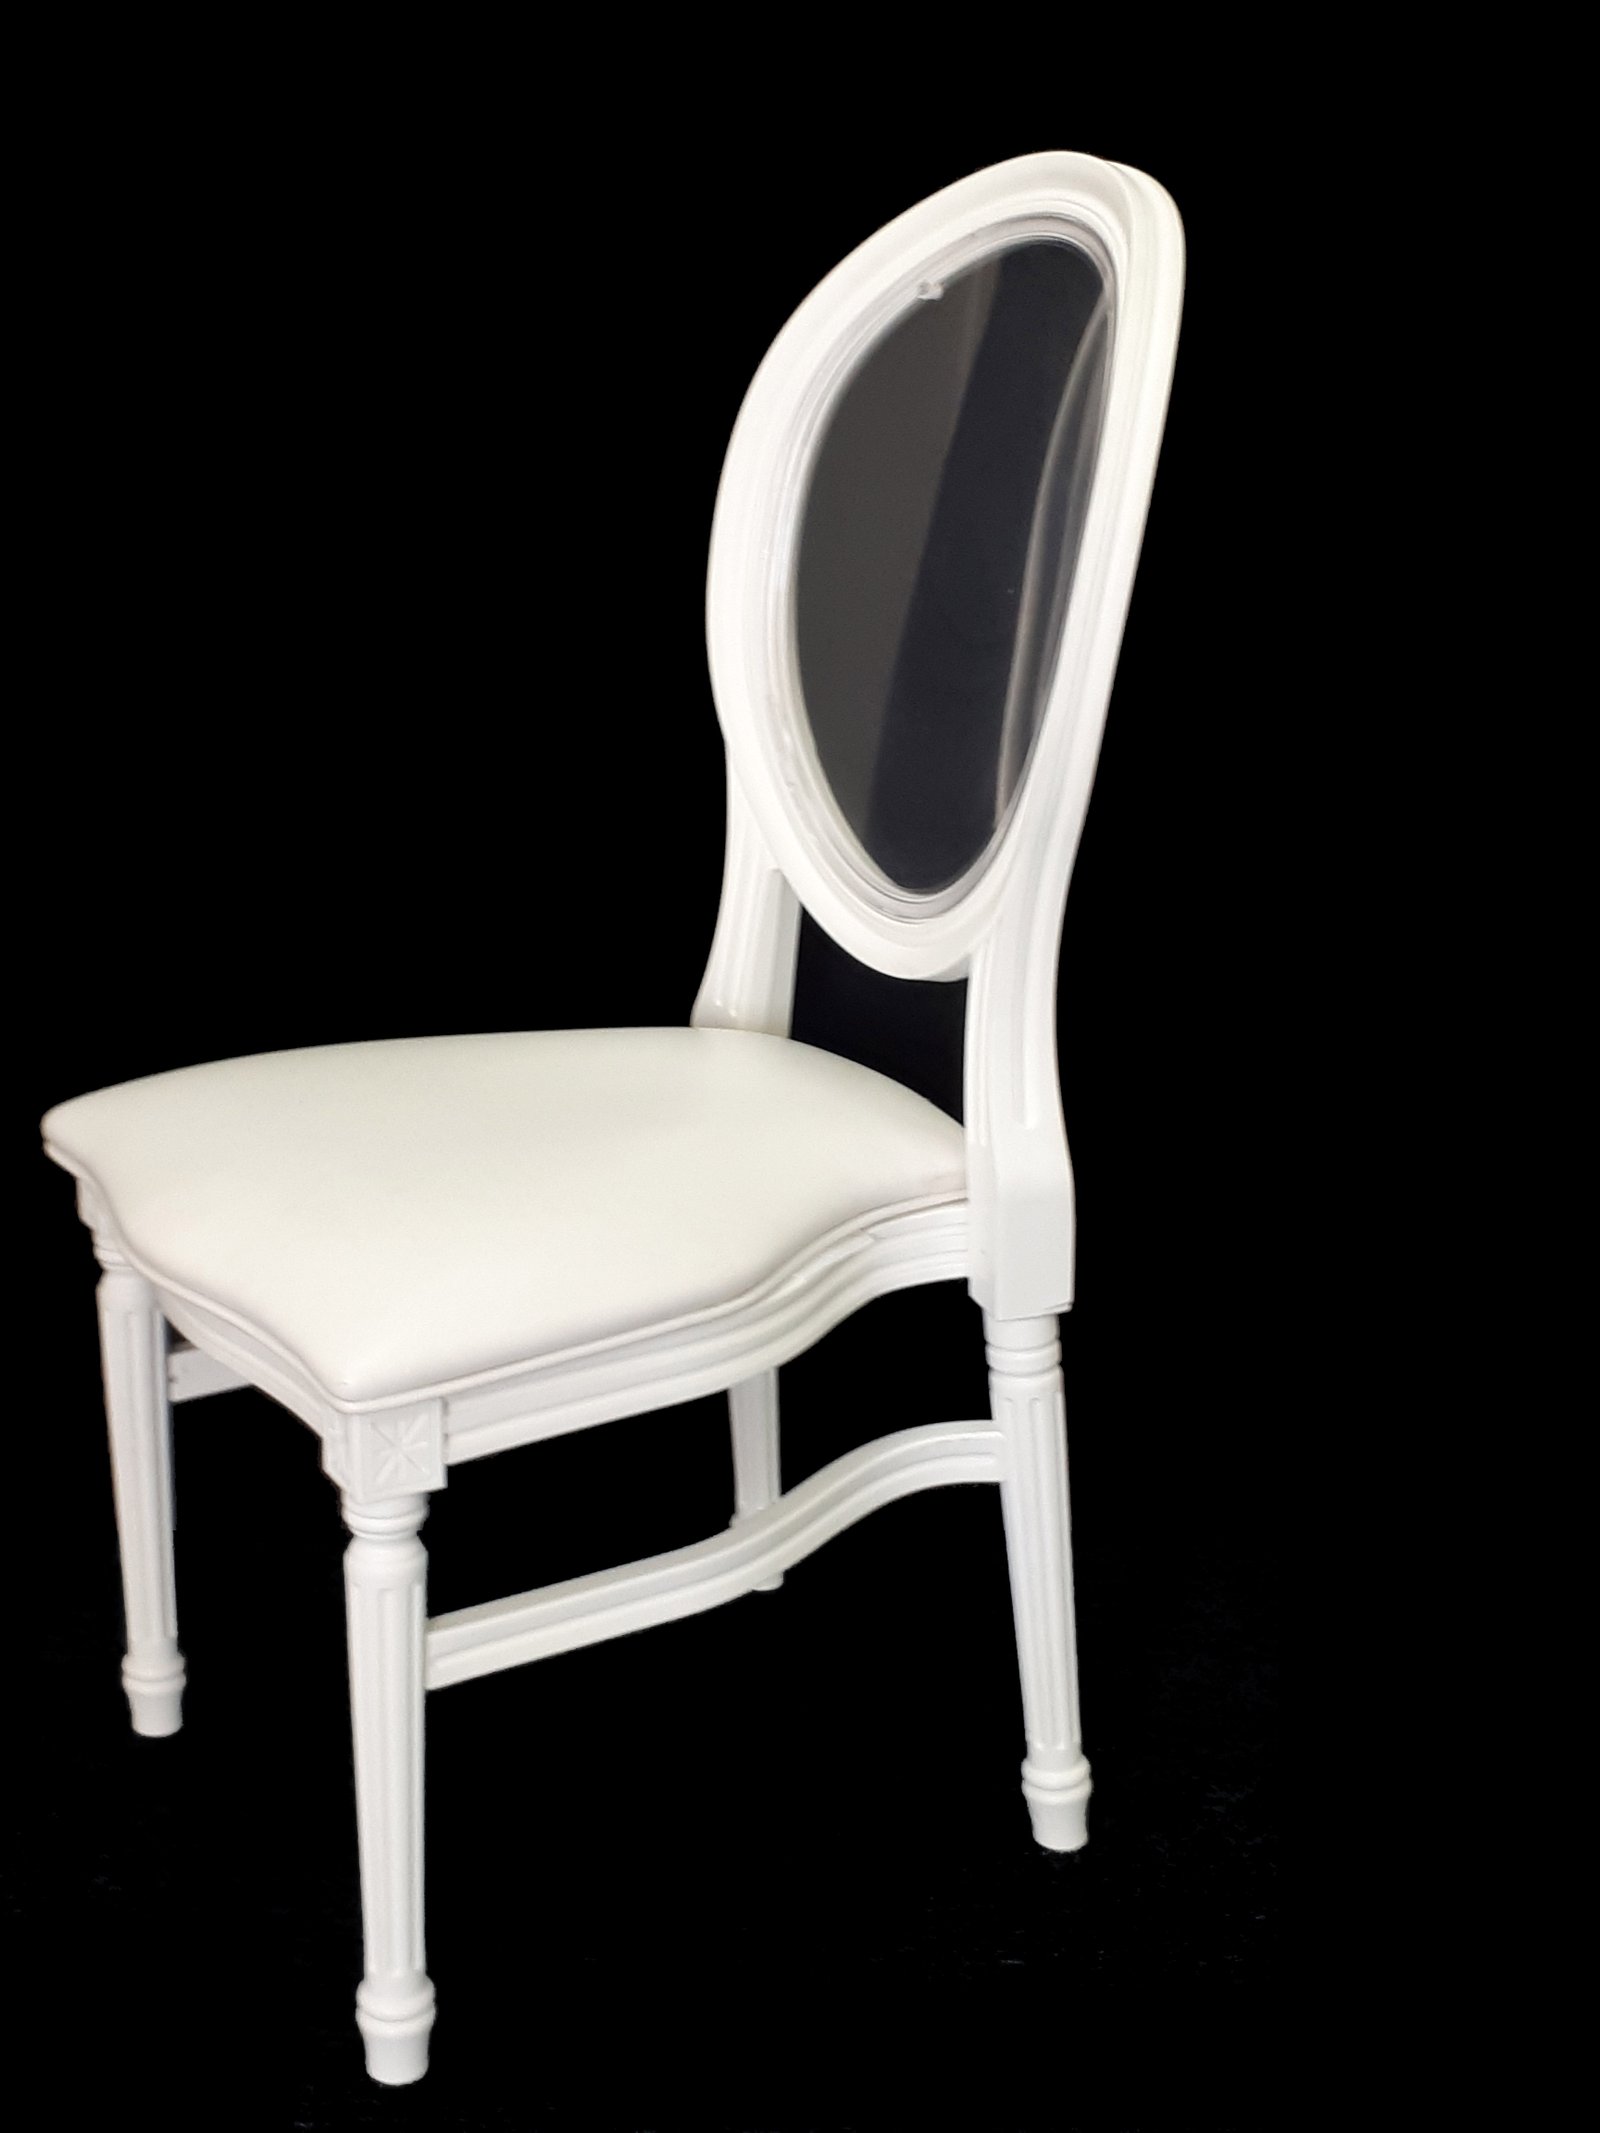 X 04 White Special Dior Chair Dubai Wedding Chair Rental Dubai